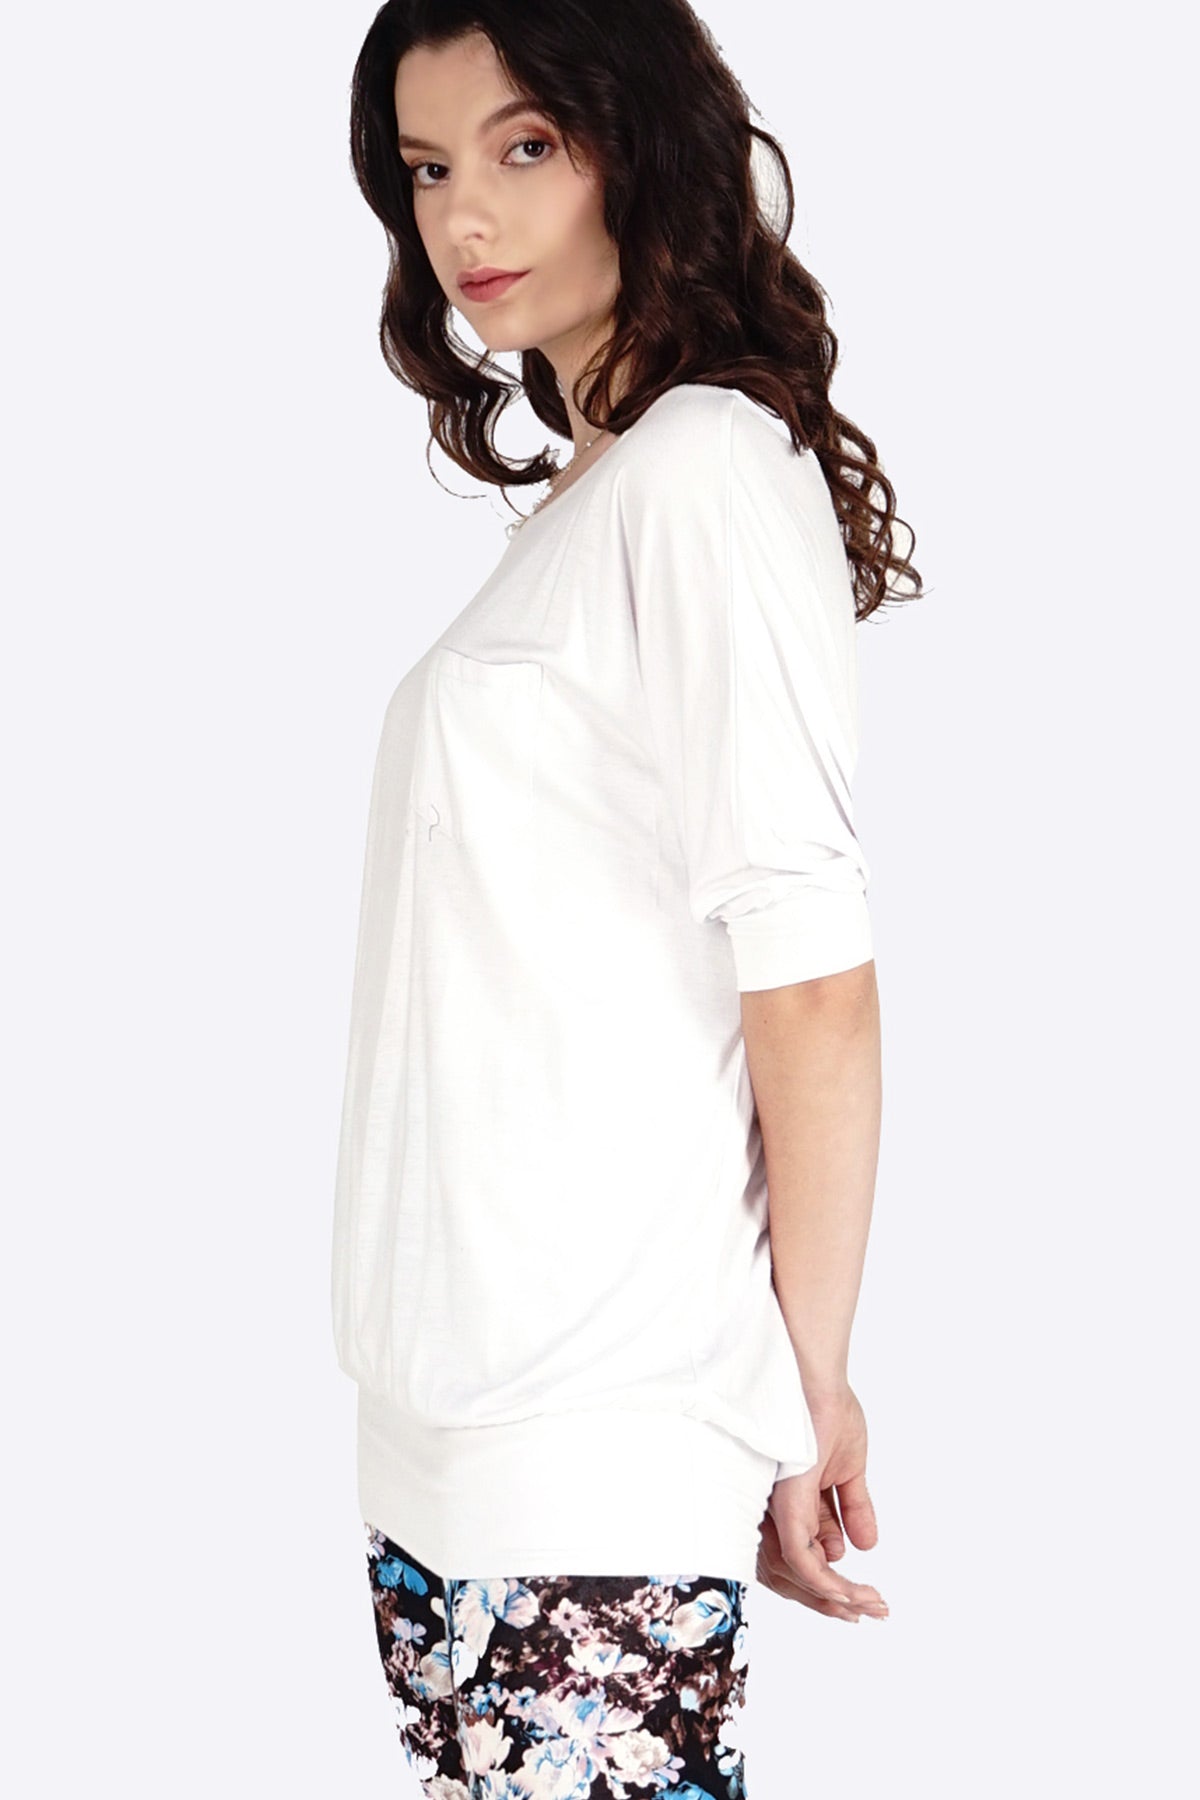 T-Shirt Lengan Pendek Bodyfit Rayon Shoulderness White